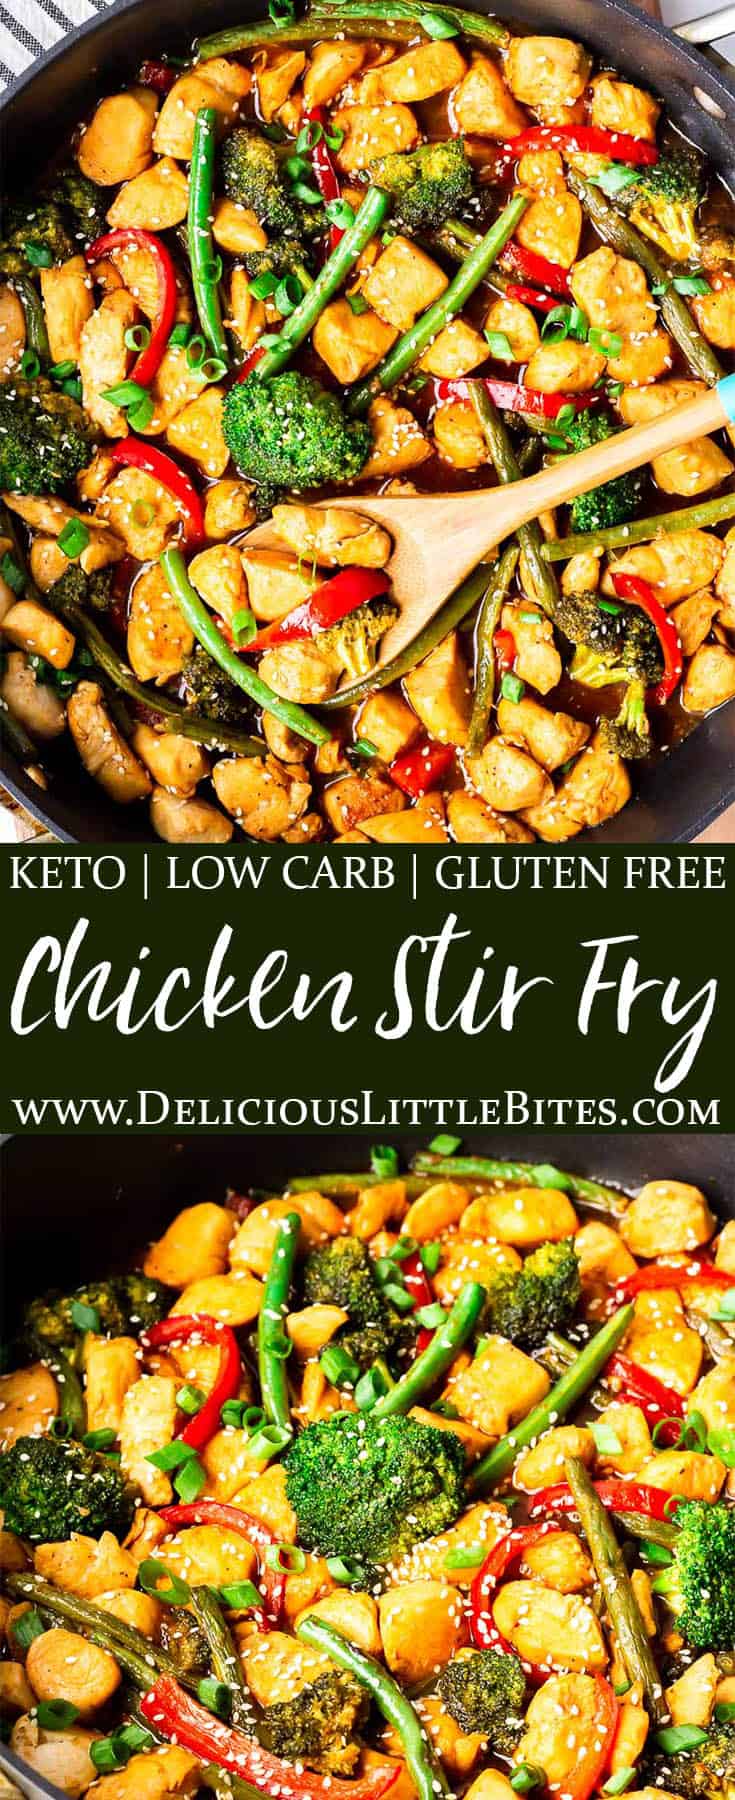 Keto Chicken Stir Fry Recipe (Gluten Free) - Delicious Little Bites